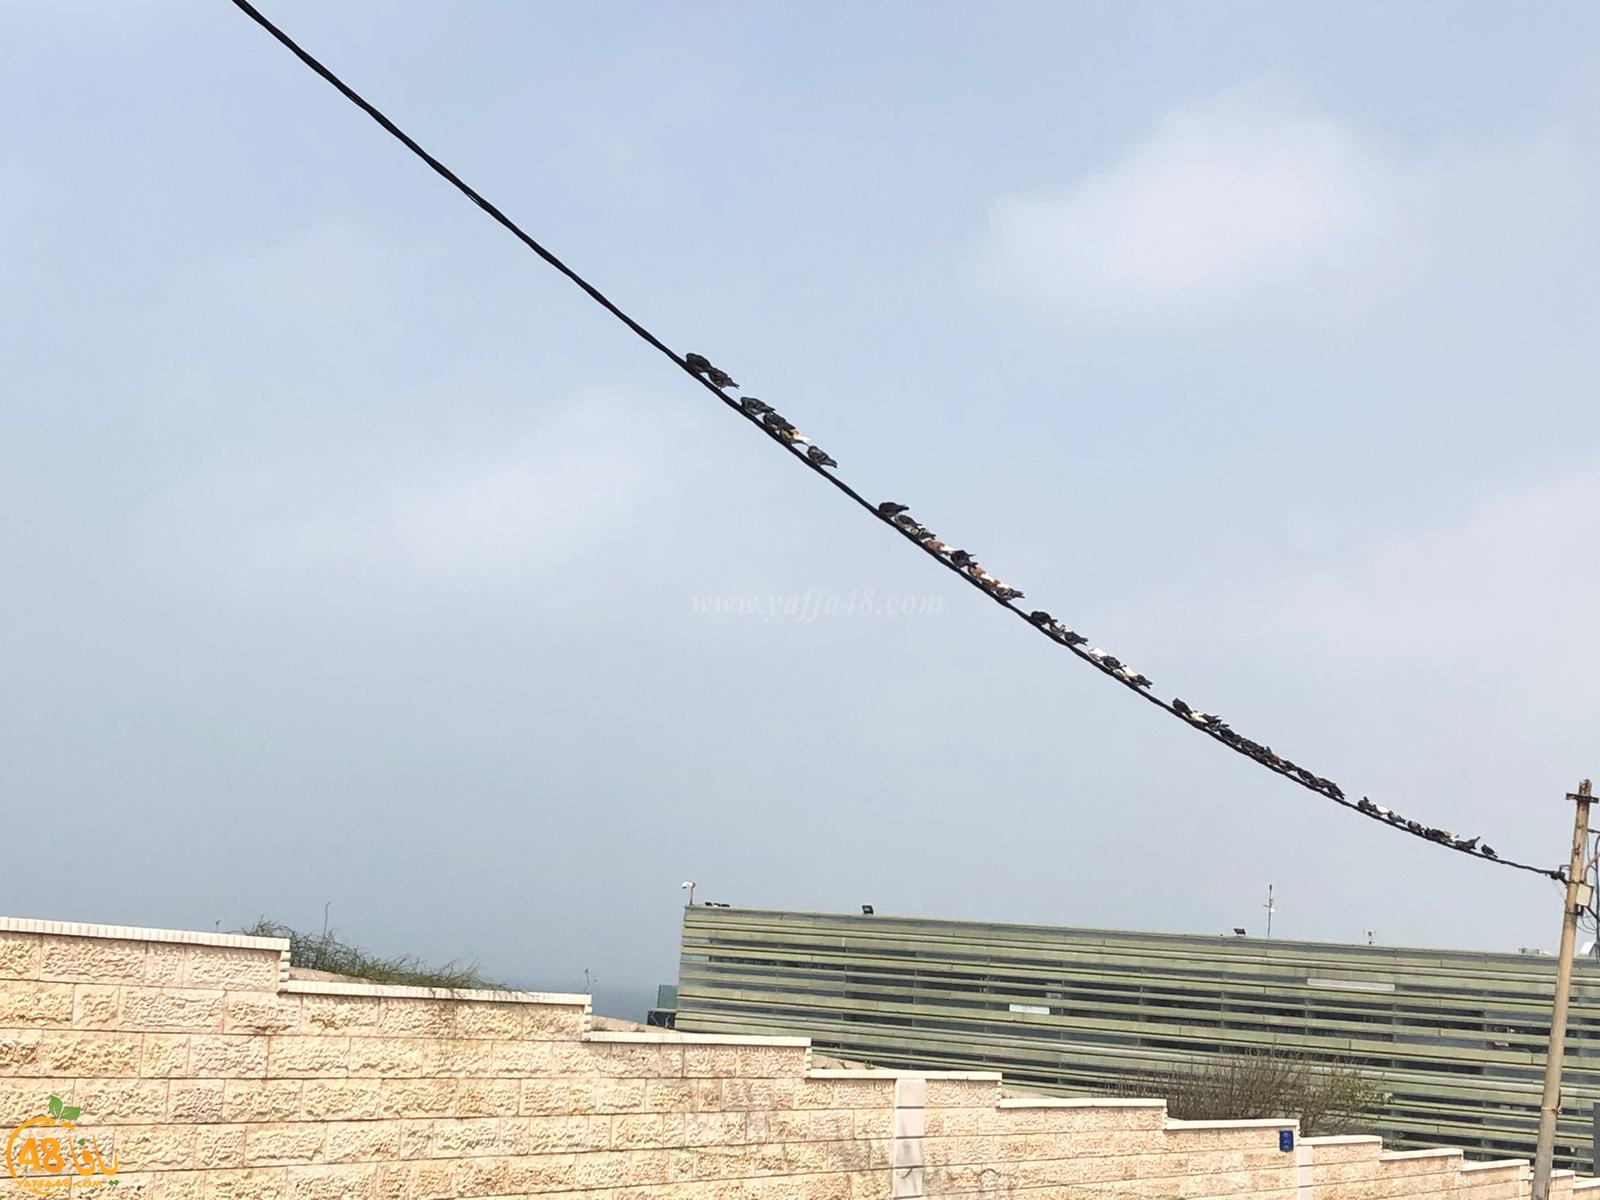  صور: طيور الحمام تصطف بانتظام فوق سلك كهرباء قرب مقبرة الكازاخانة بيافا 